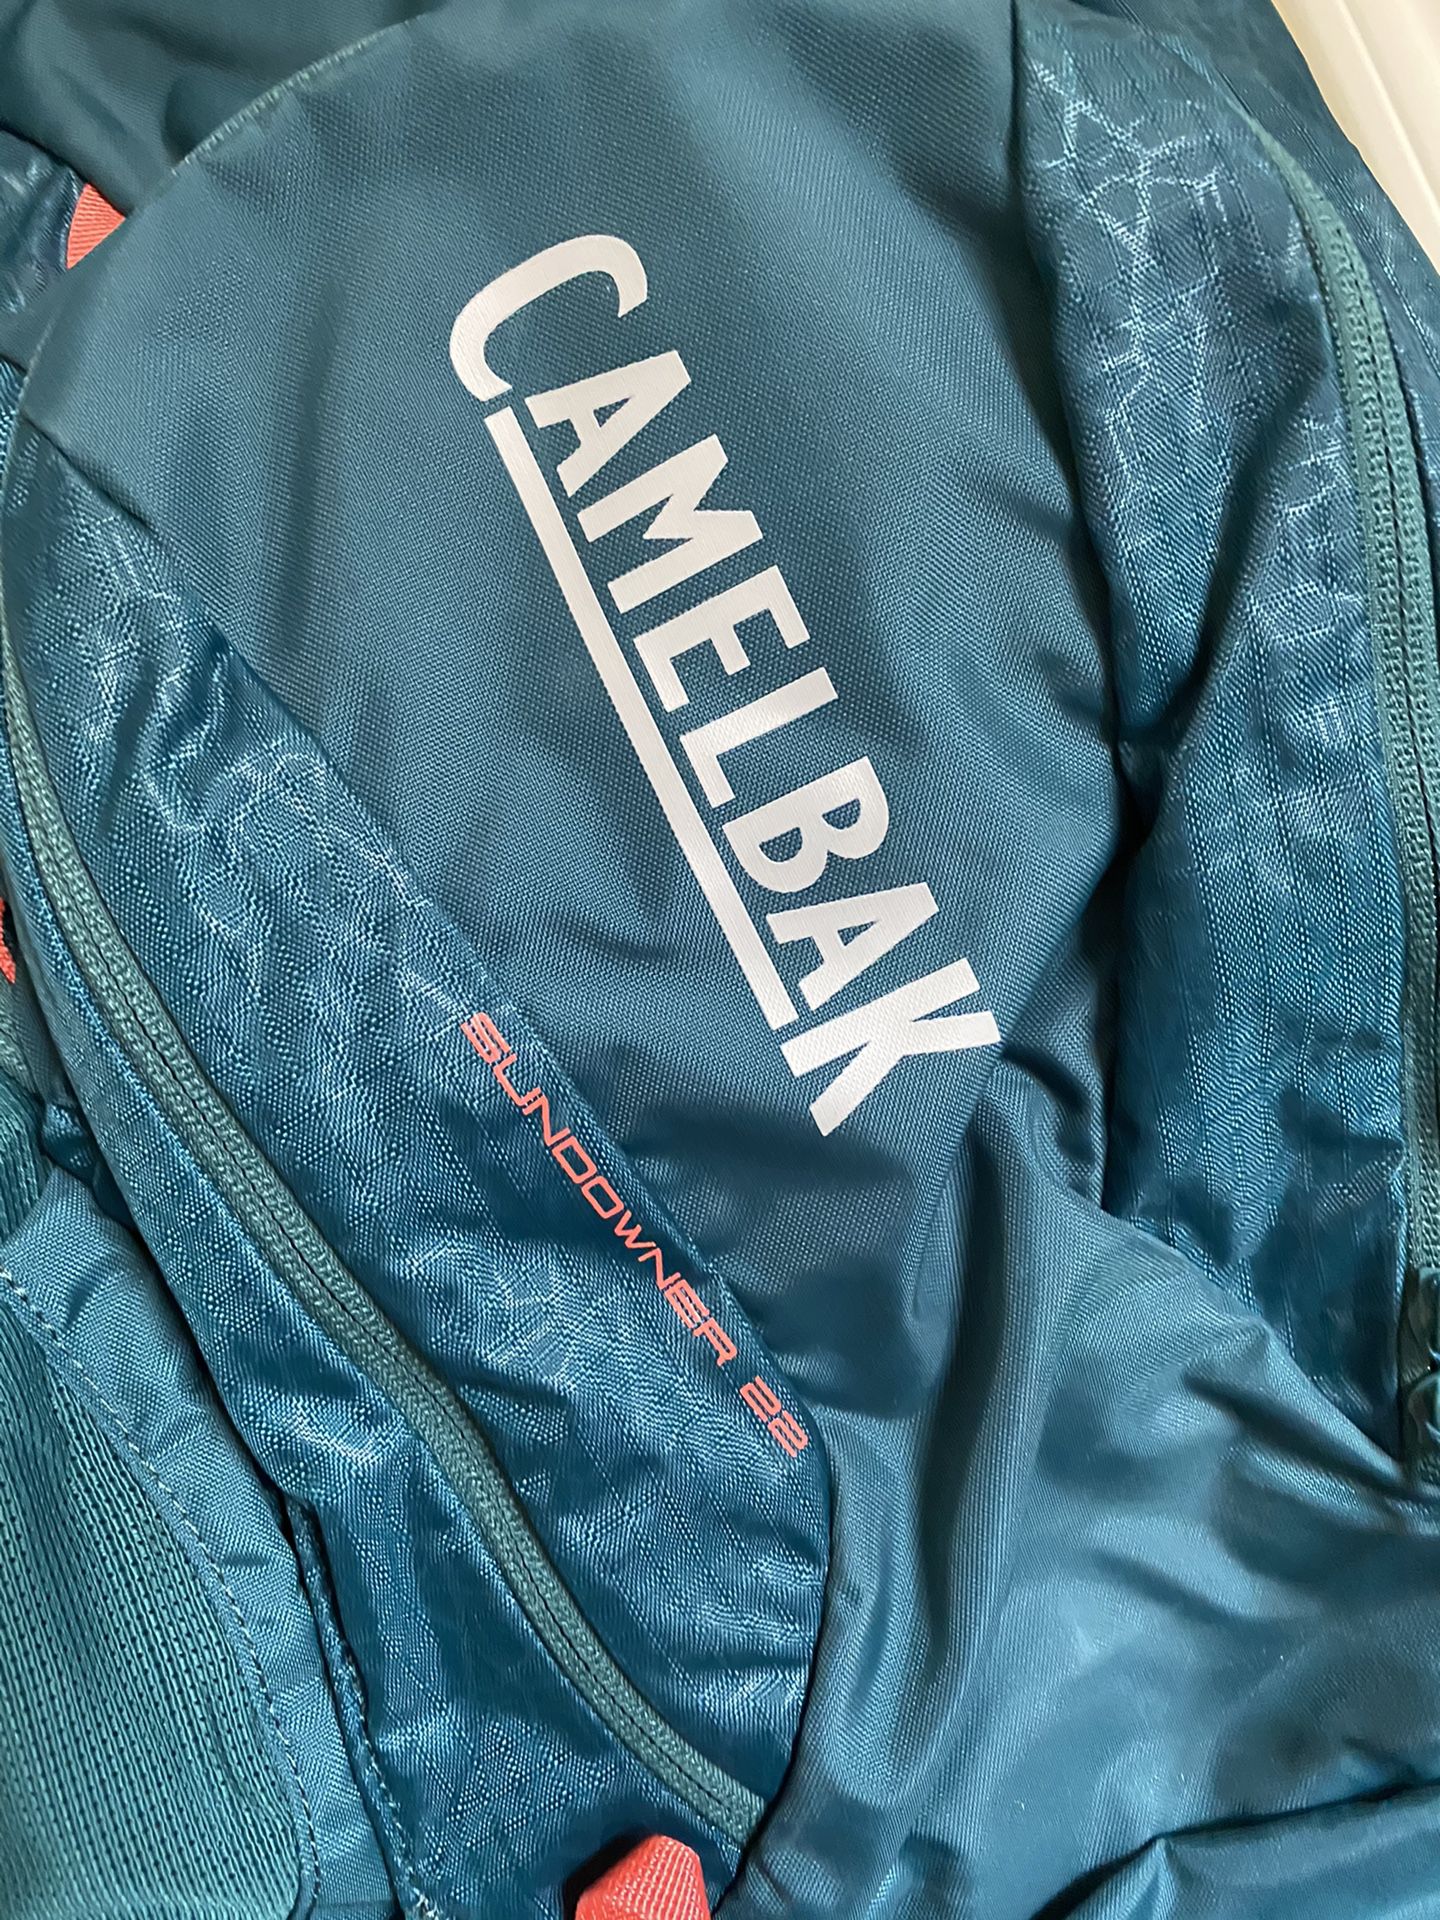 sundowner 22 backpack camelback